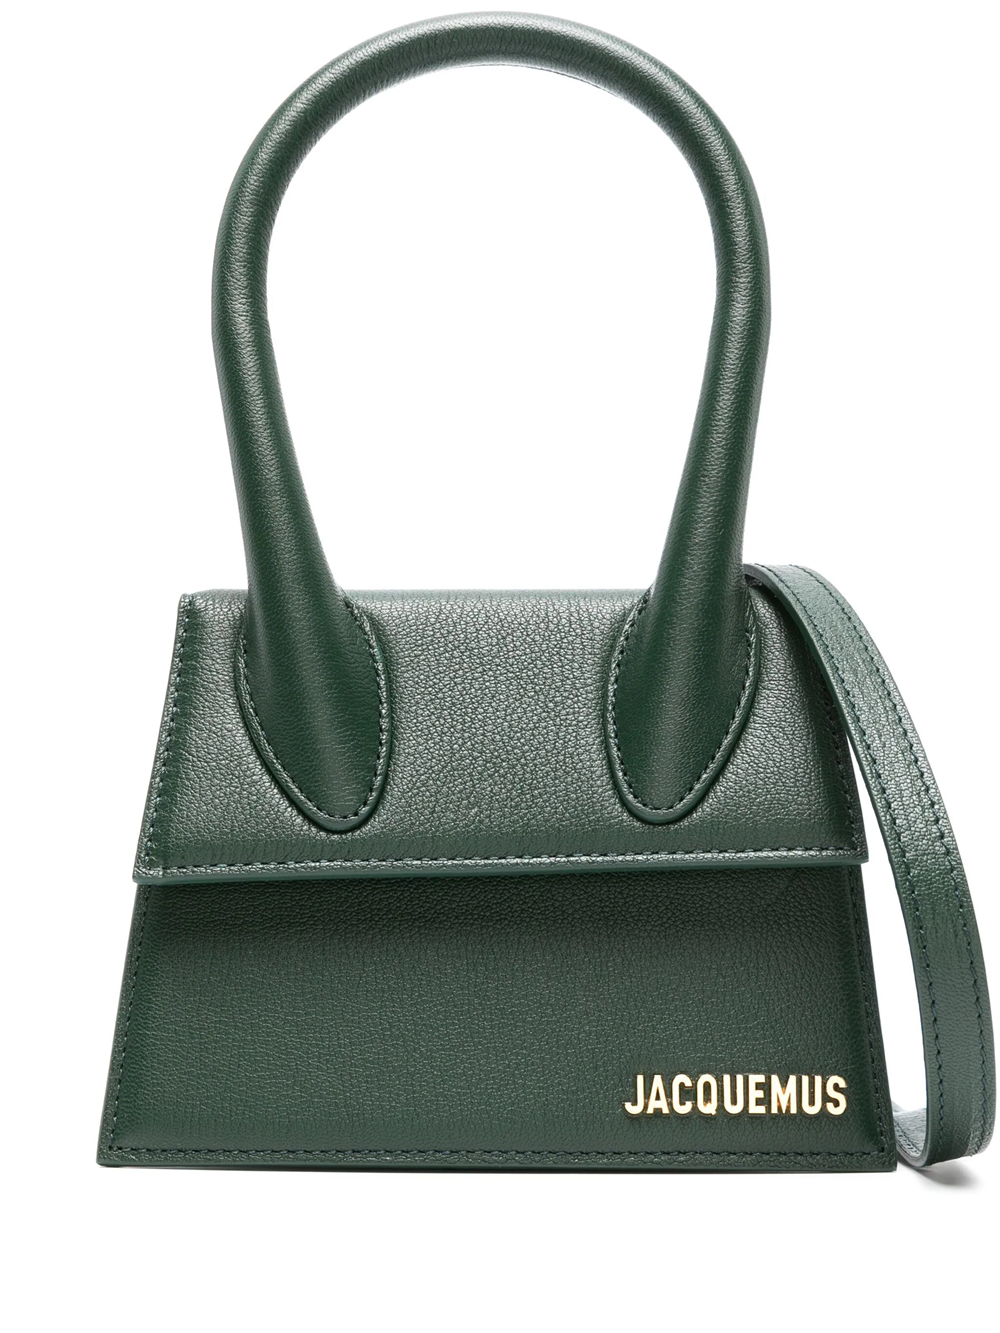 Jacquemus Medium Le Chiquito Tote Bag In Green